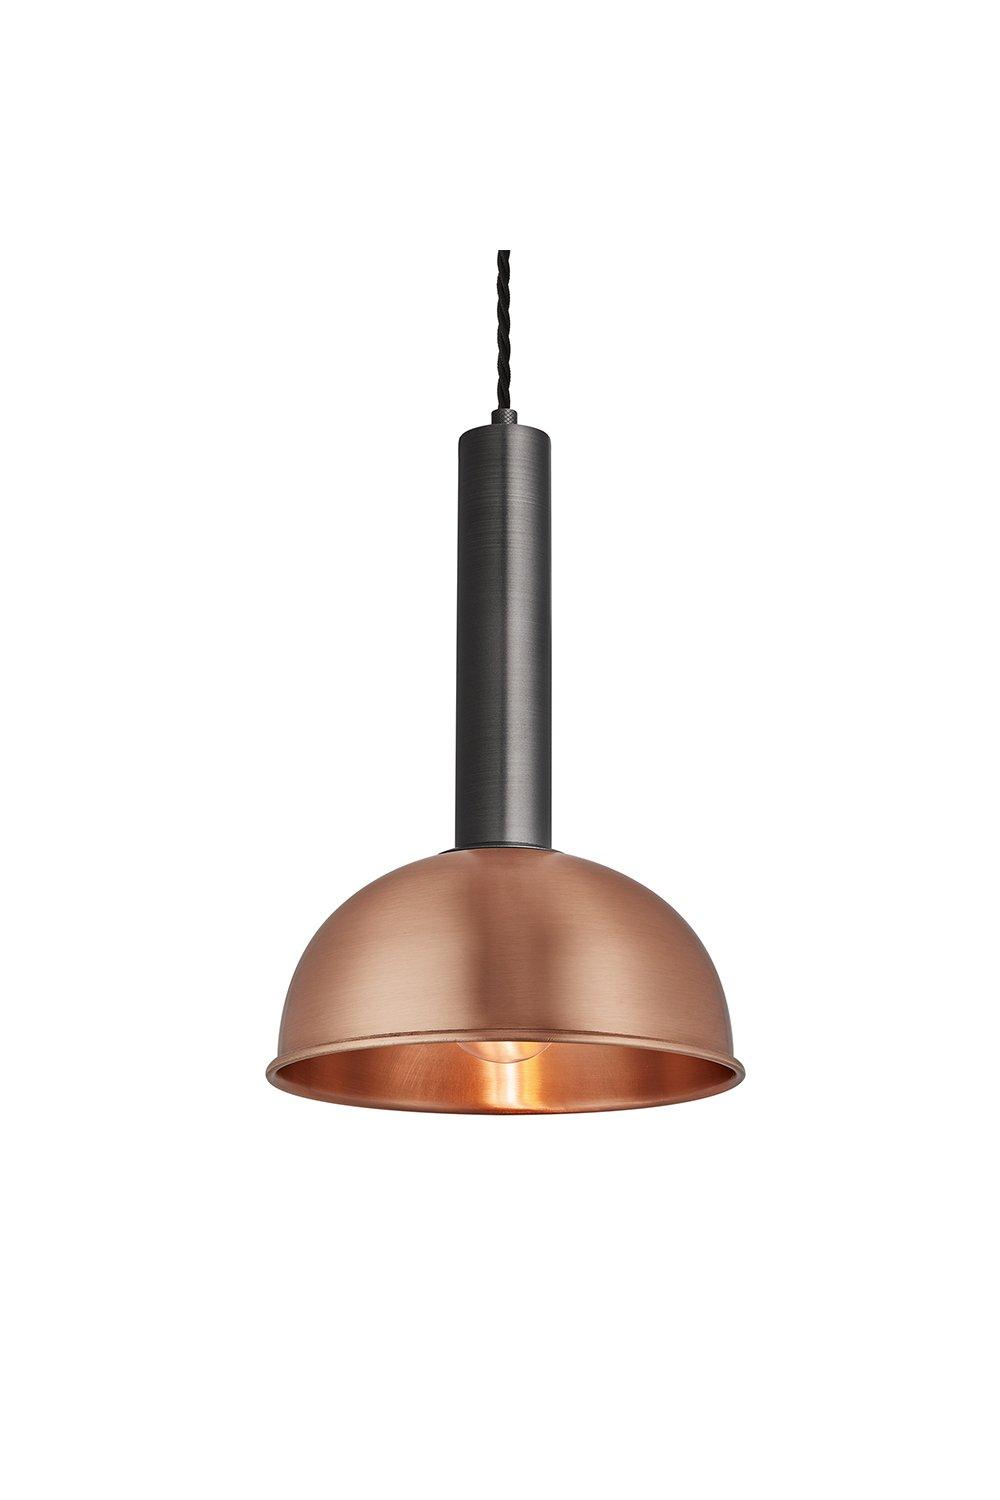 Sleek Cylinder Dome Pendant Light, 8 Inch, Copper, Pewter Holder